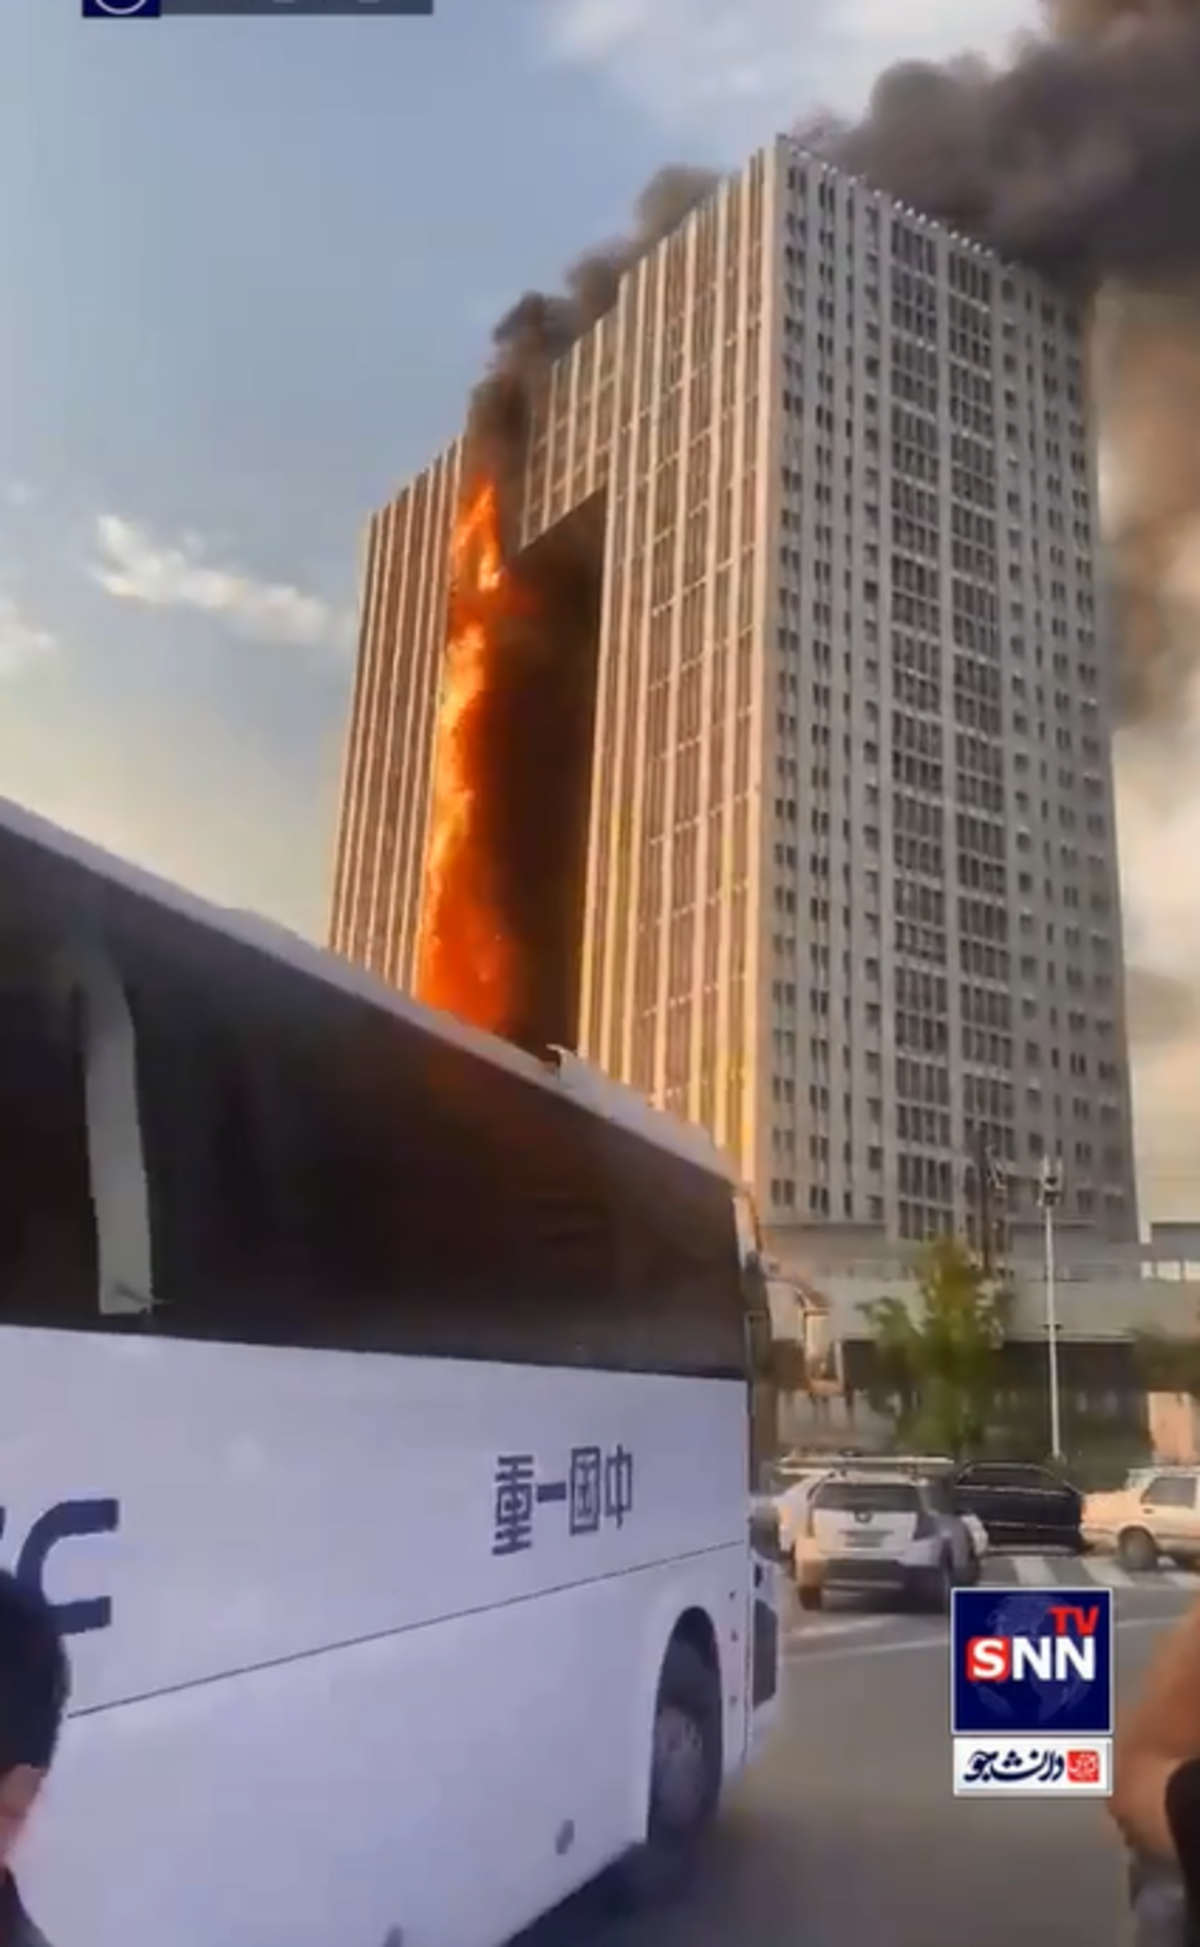 ویدئویی دیگر از آتش سوزی برج مسکونی در دالیان چین (فیلم)